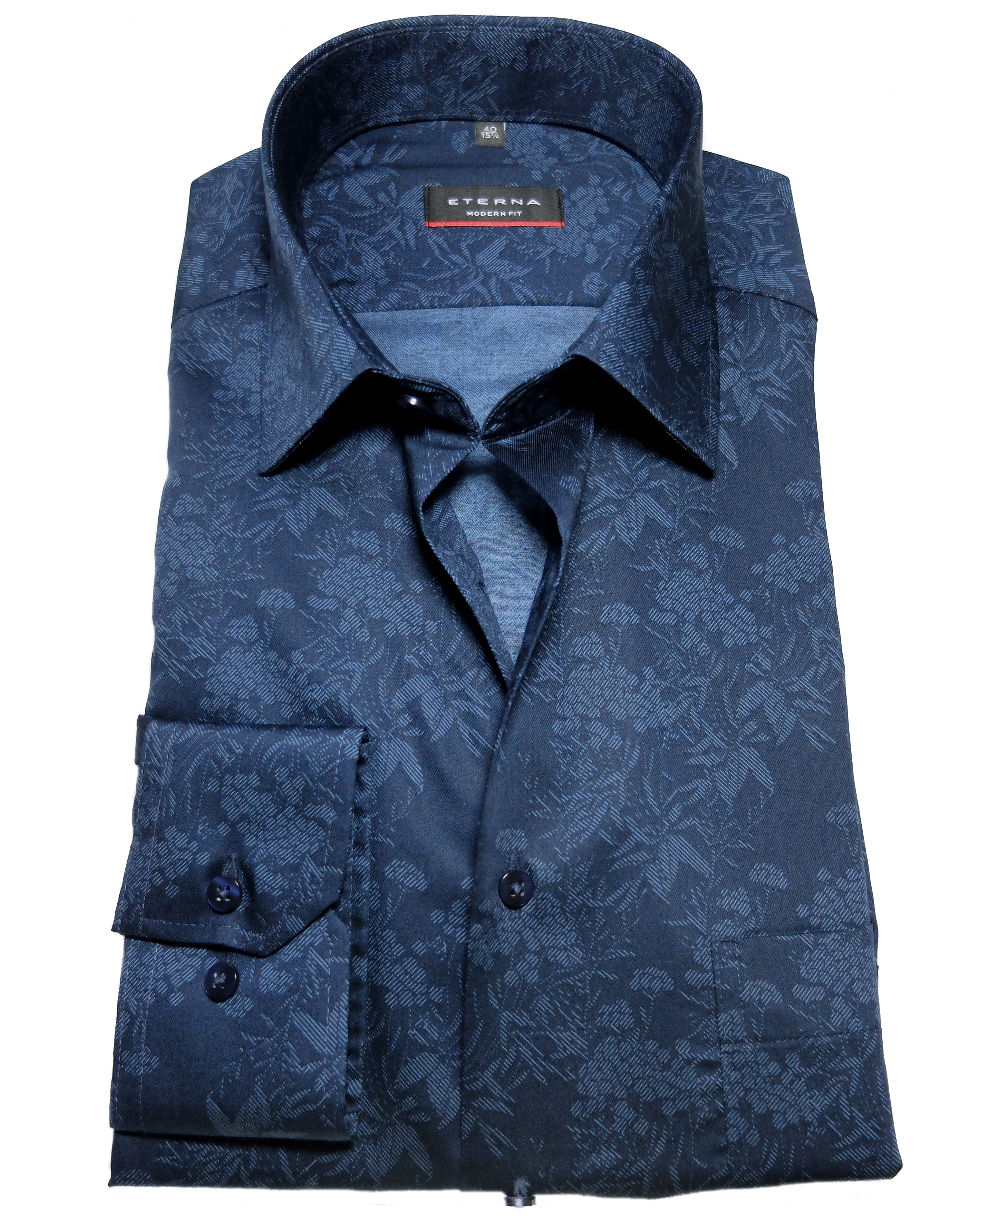 Krawatte Modern Hochwertige Langarmhemd Floralmotiv blau Fit Herrenmode Marken + - fairen zu dunkelblau führender eterna